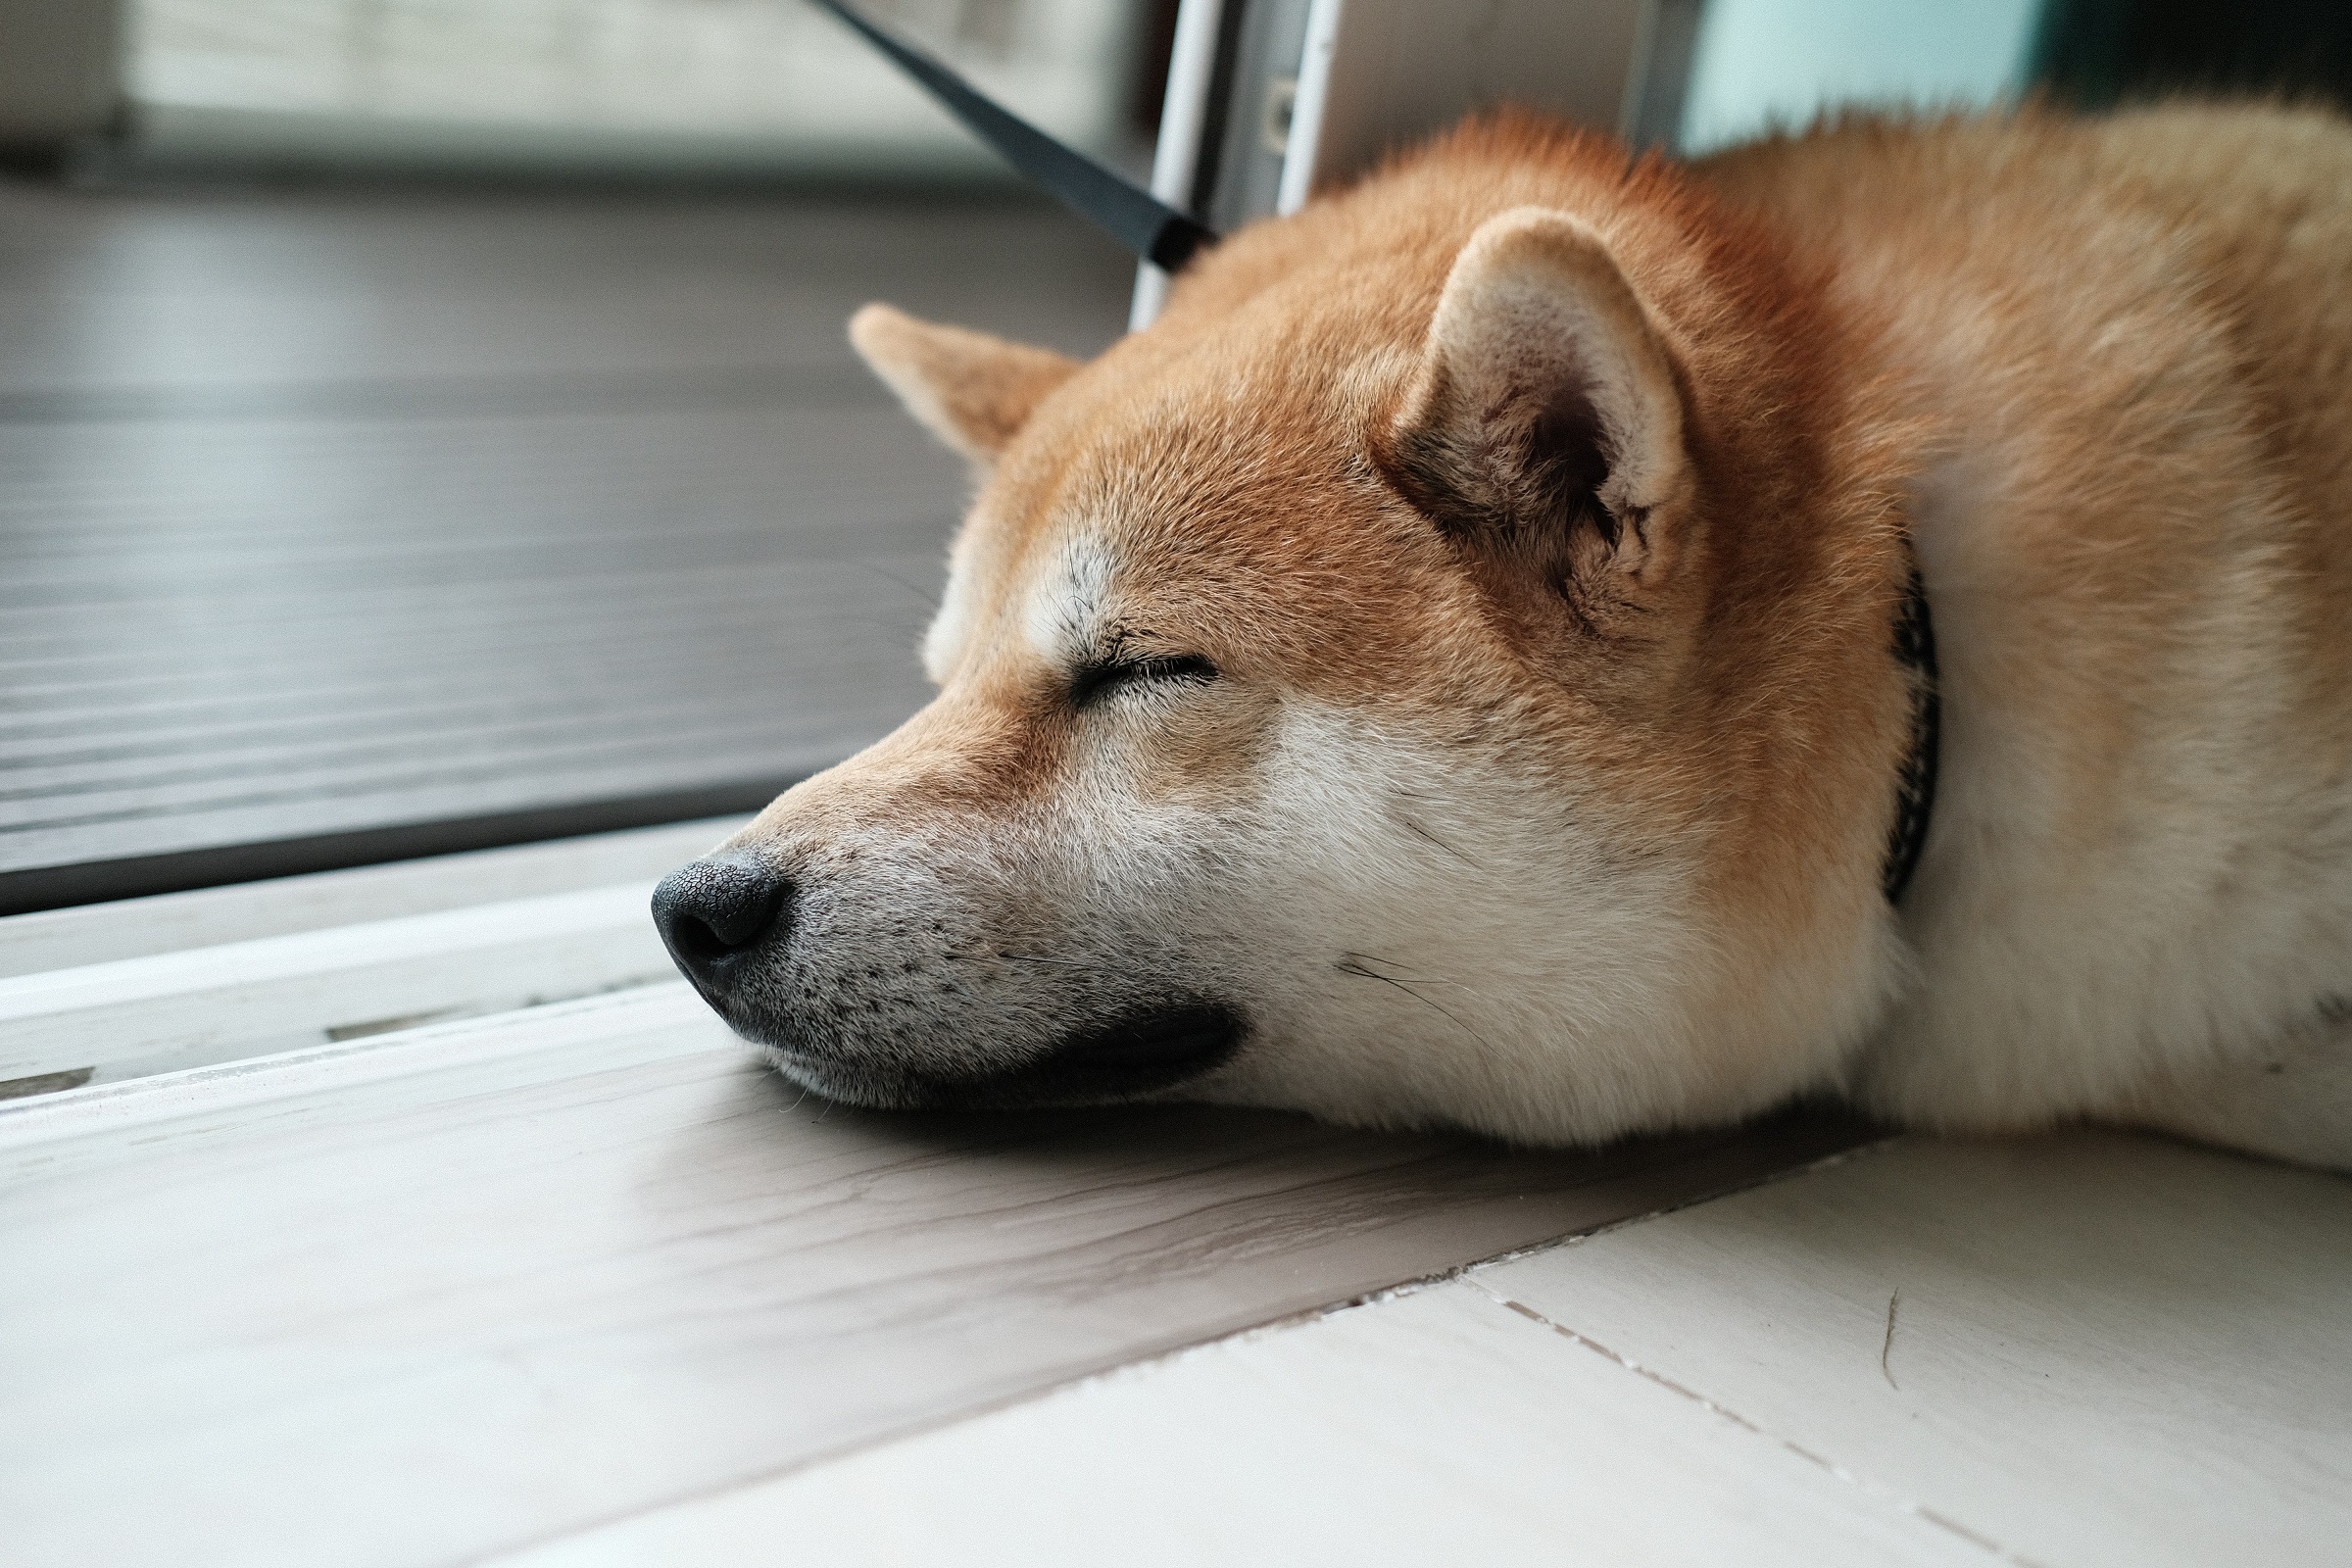 Dogecoin - Shiba Inu dog sleeping.